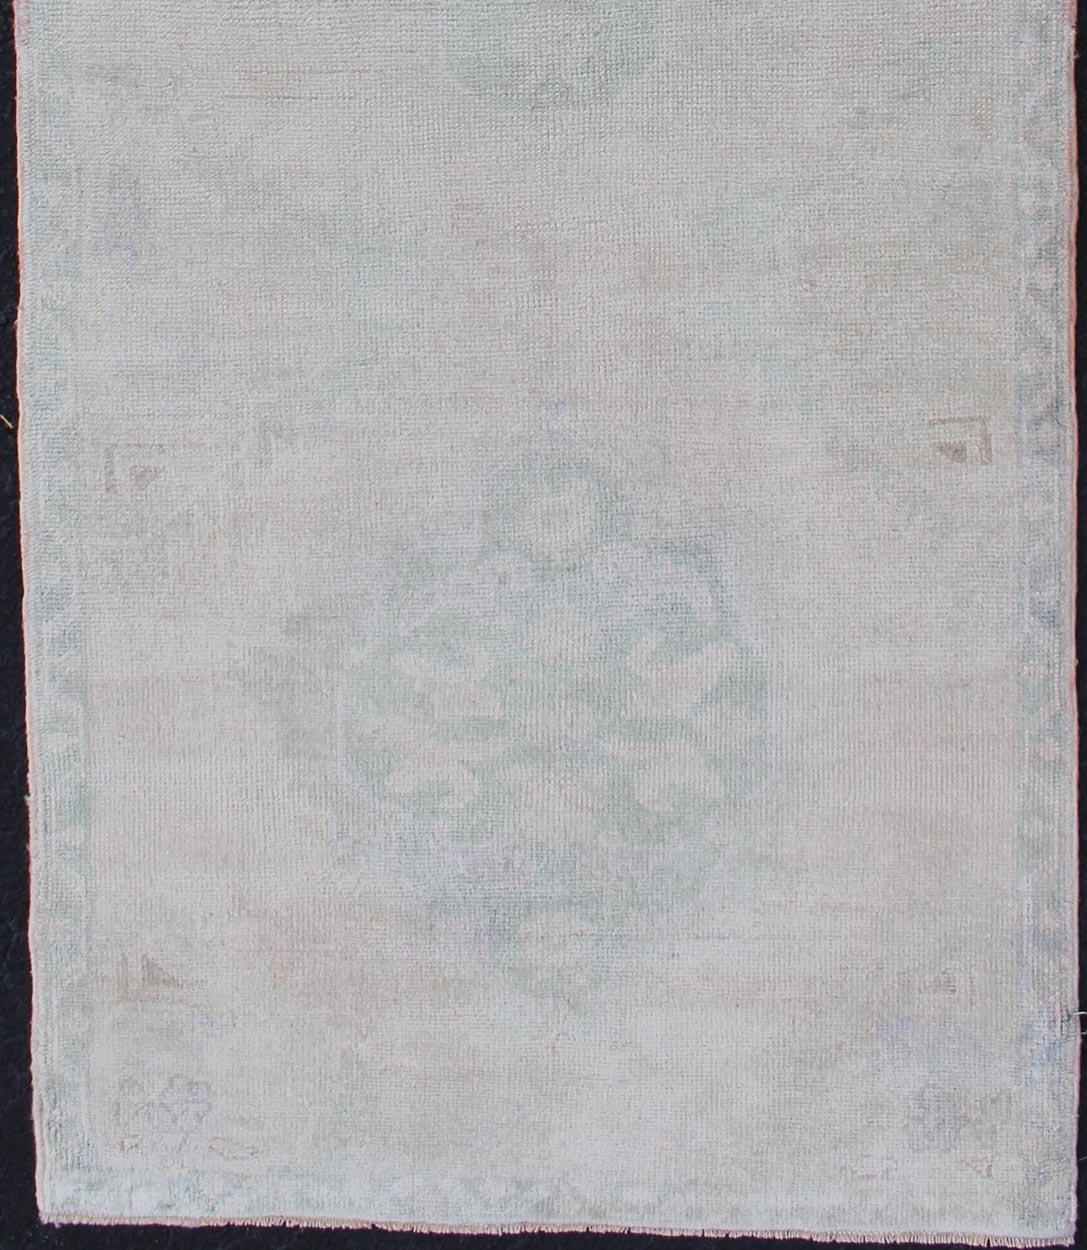 Oushak Vintage-Teppich aus der Türkei mit Tri-Medaillon-Muster, Teppich tu-mtu-4911, Herkunftsland / Typ: Türkei / Oushak, um 1940.

Dieser türkische Oushak-Teppich im Vintage-Stil zeichnet sich durch ein Multi-Medaillon-Muster aus, das von